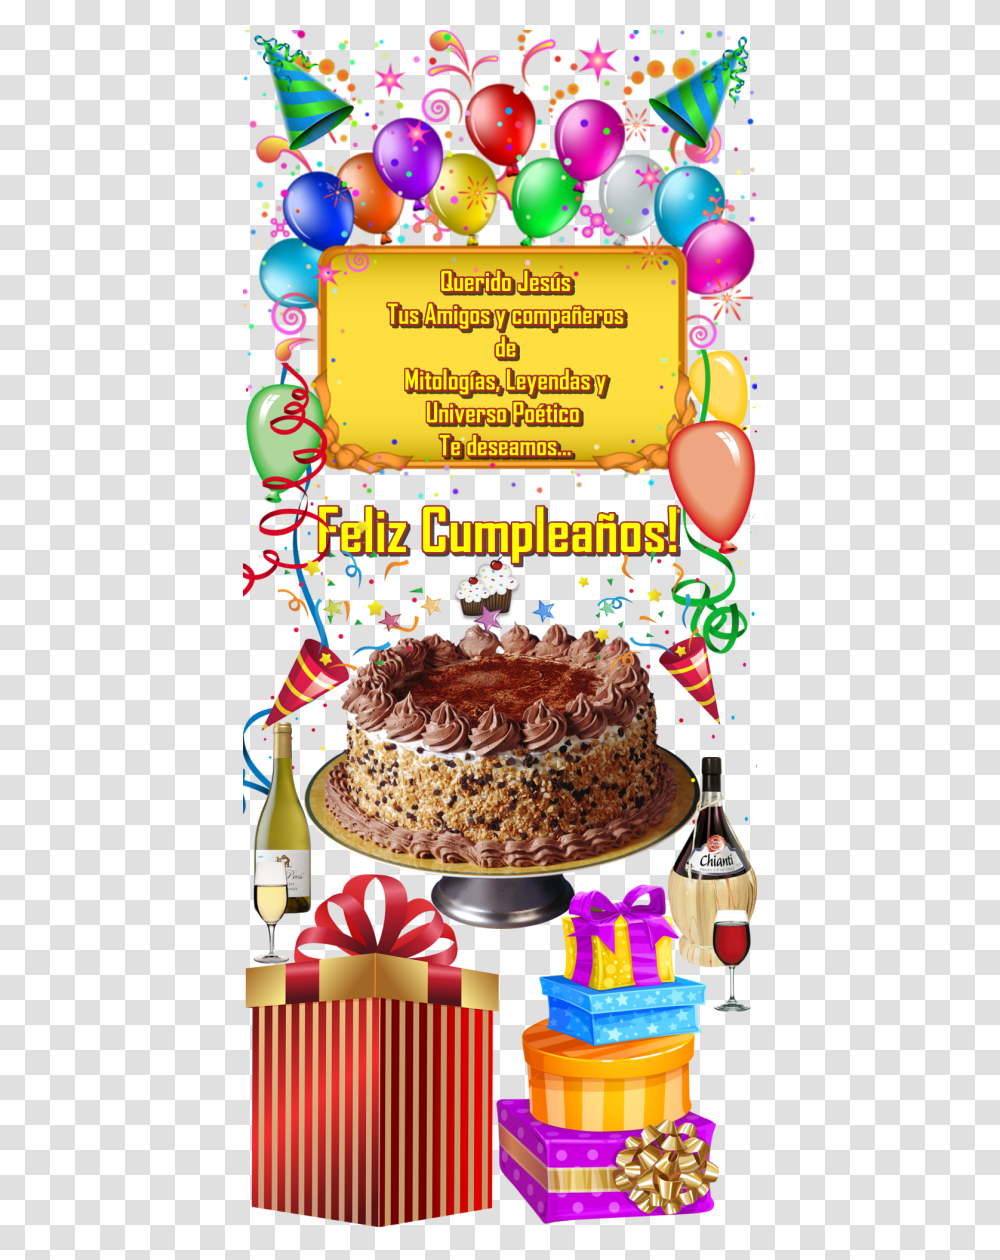 Feliz Querido Amigo Feliz Cumpleanos Querido Amigo, Cake, Dessert, Food, Birthday Cake Transparent Png